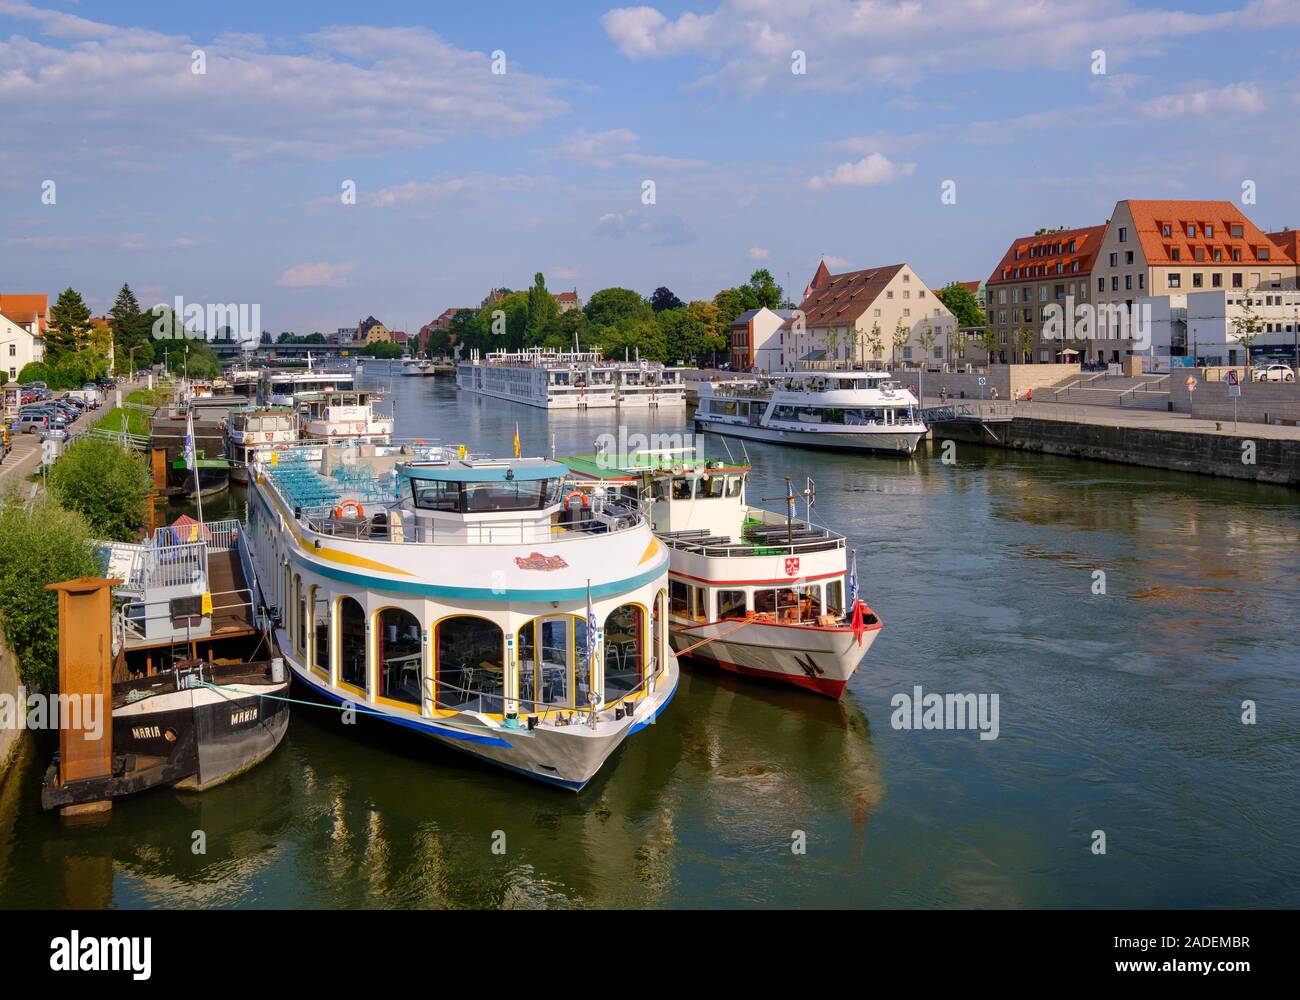 Des bateaux d'excursion et des bateaux de croisière sur le Danube, Regensburg, Allemagne Banque D'Images